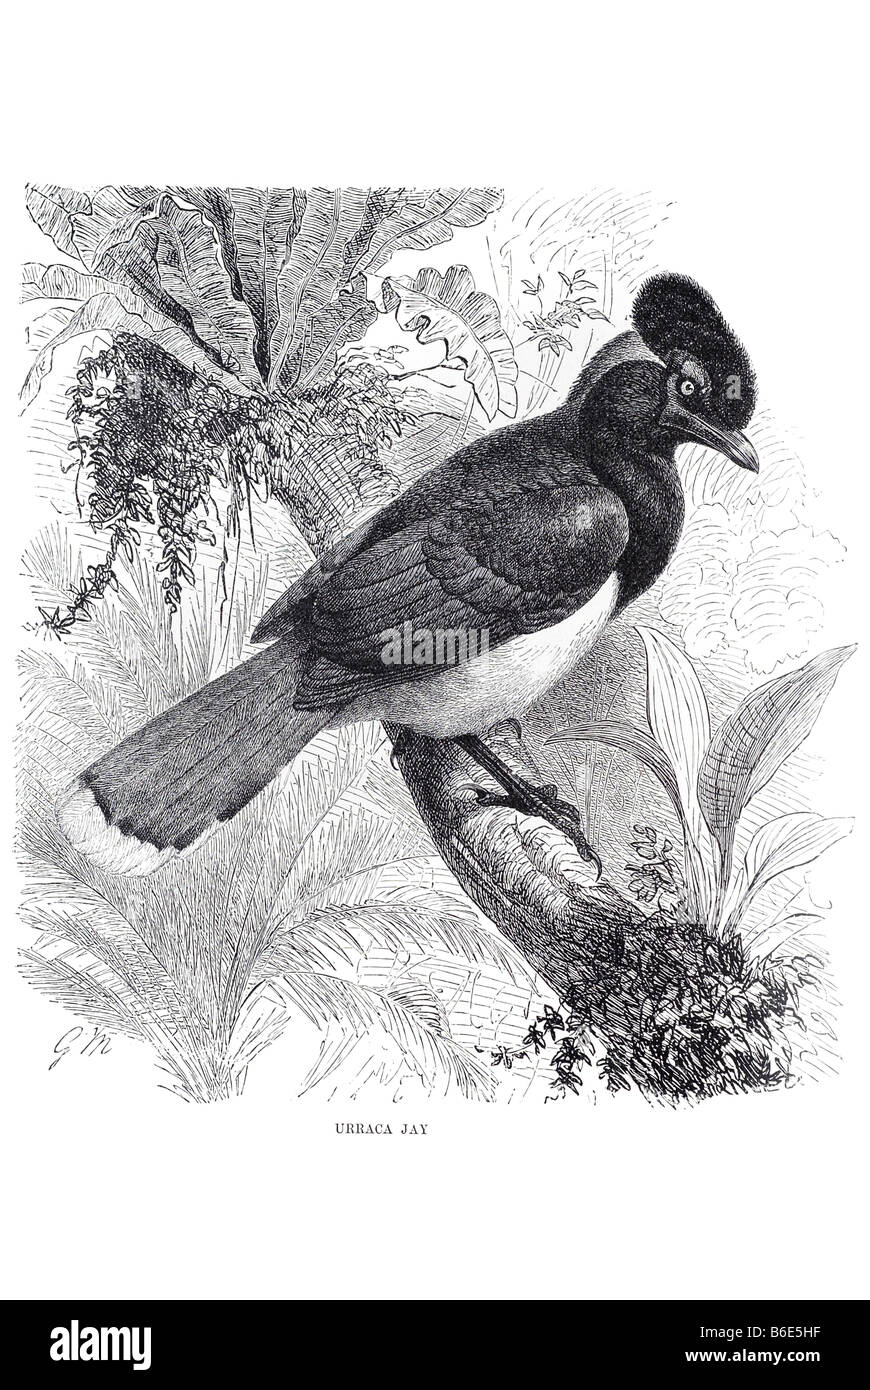 Urraca Jay Elstern sind passerine Vögel der Krähe Familie Corvidae. Den Namen "Jay" und "Elster" sind zu einem bestimmten Ausmaß Kü Stockfoto